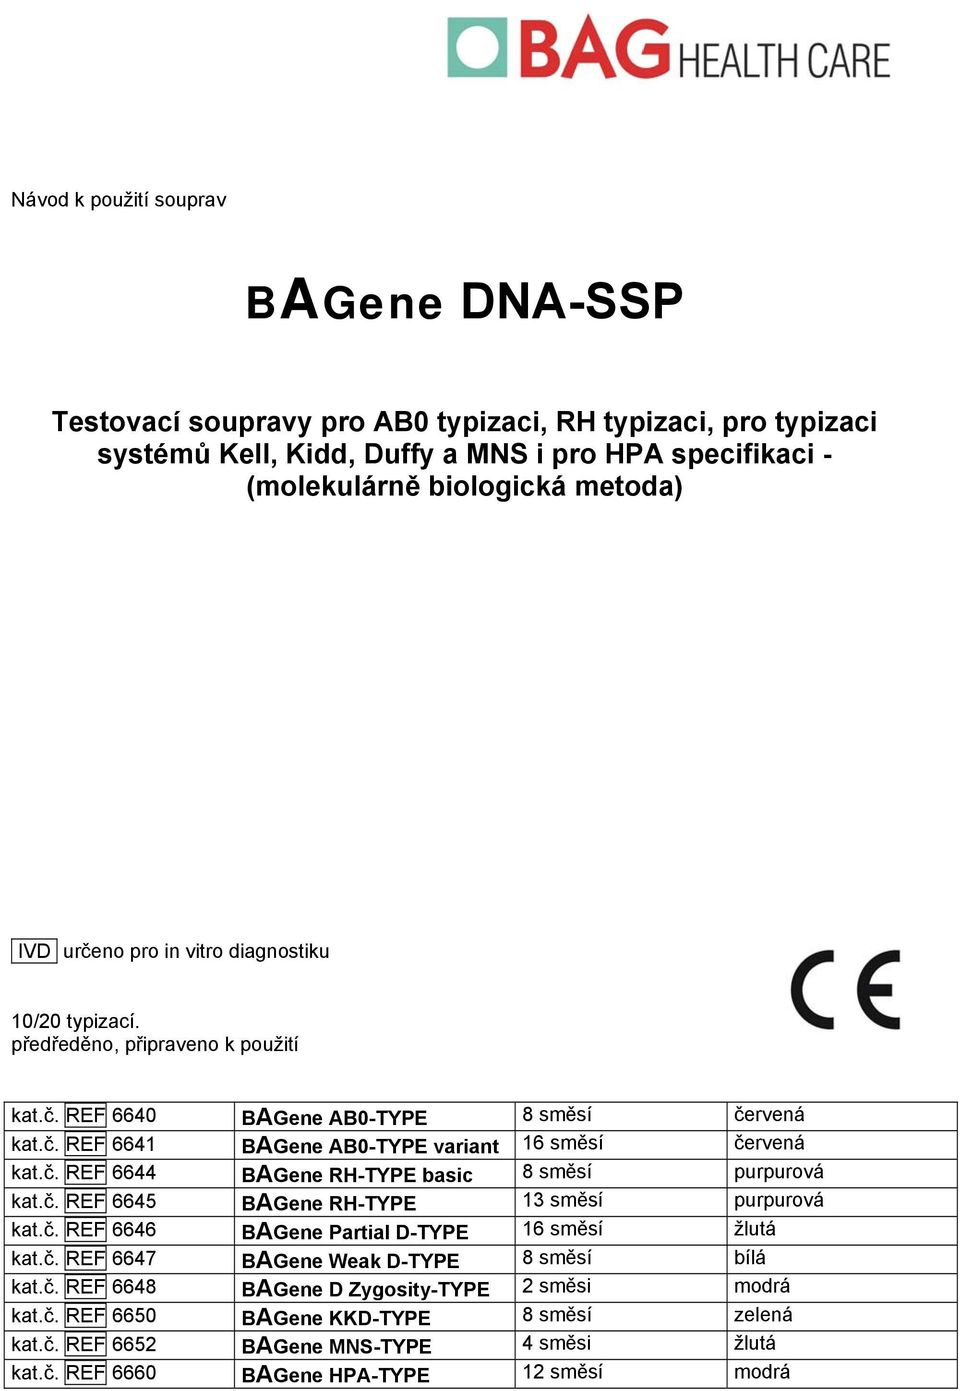 č. REF 6645 BAGene RH-TYPE 13 směsí purpurová kat.č. REF 6646 BAGene Partial D-TYPE 16 směsí žlutá kat.č. REF 6647 BAGene Weak D-TYPE 8 směsí bílá kat.č. REF 6648 BAGene D Zygosity-TYPE 2 směsi modrá kat.